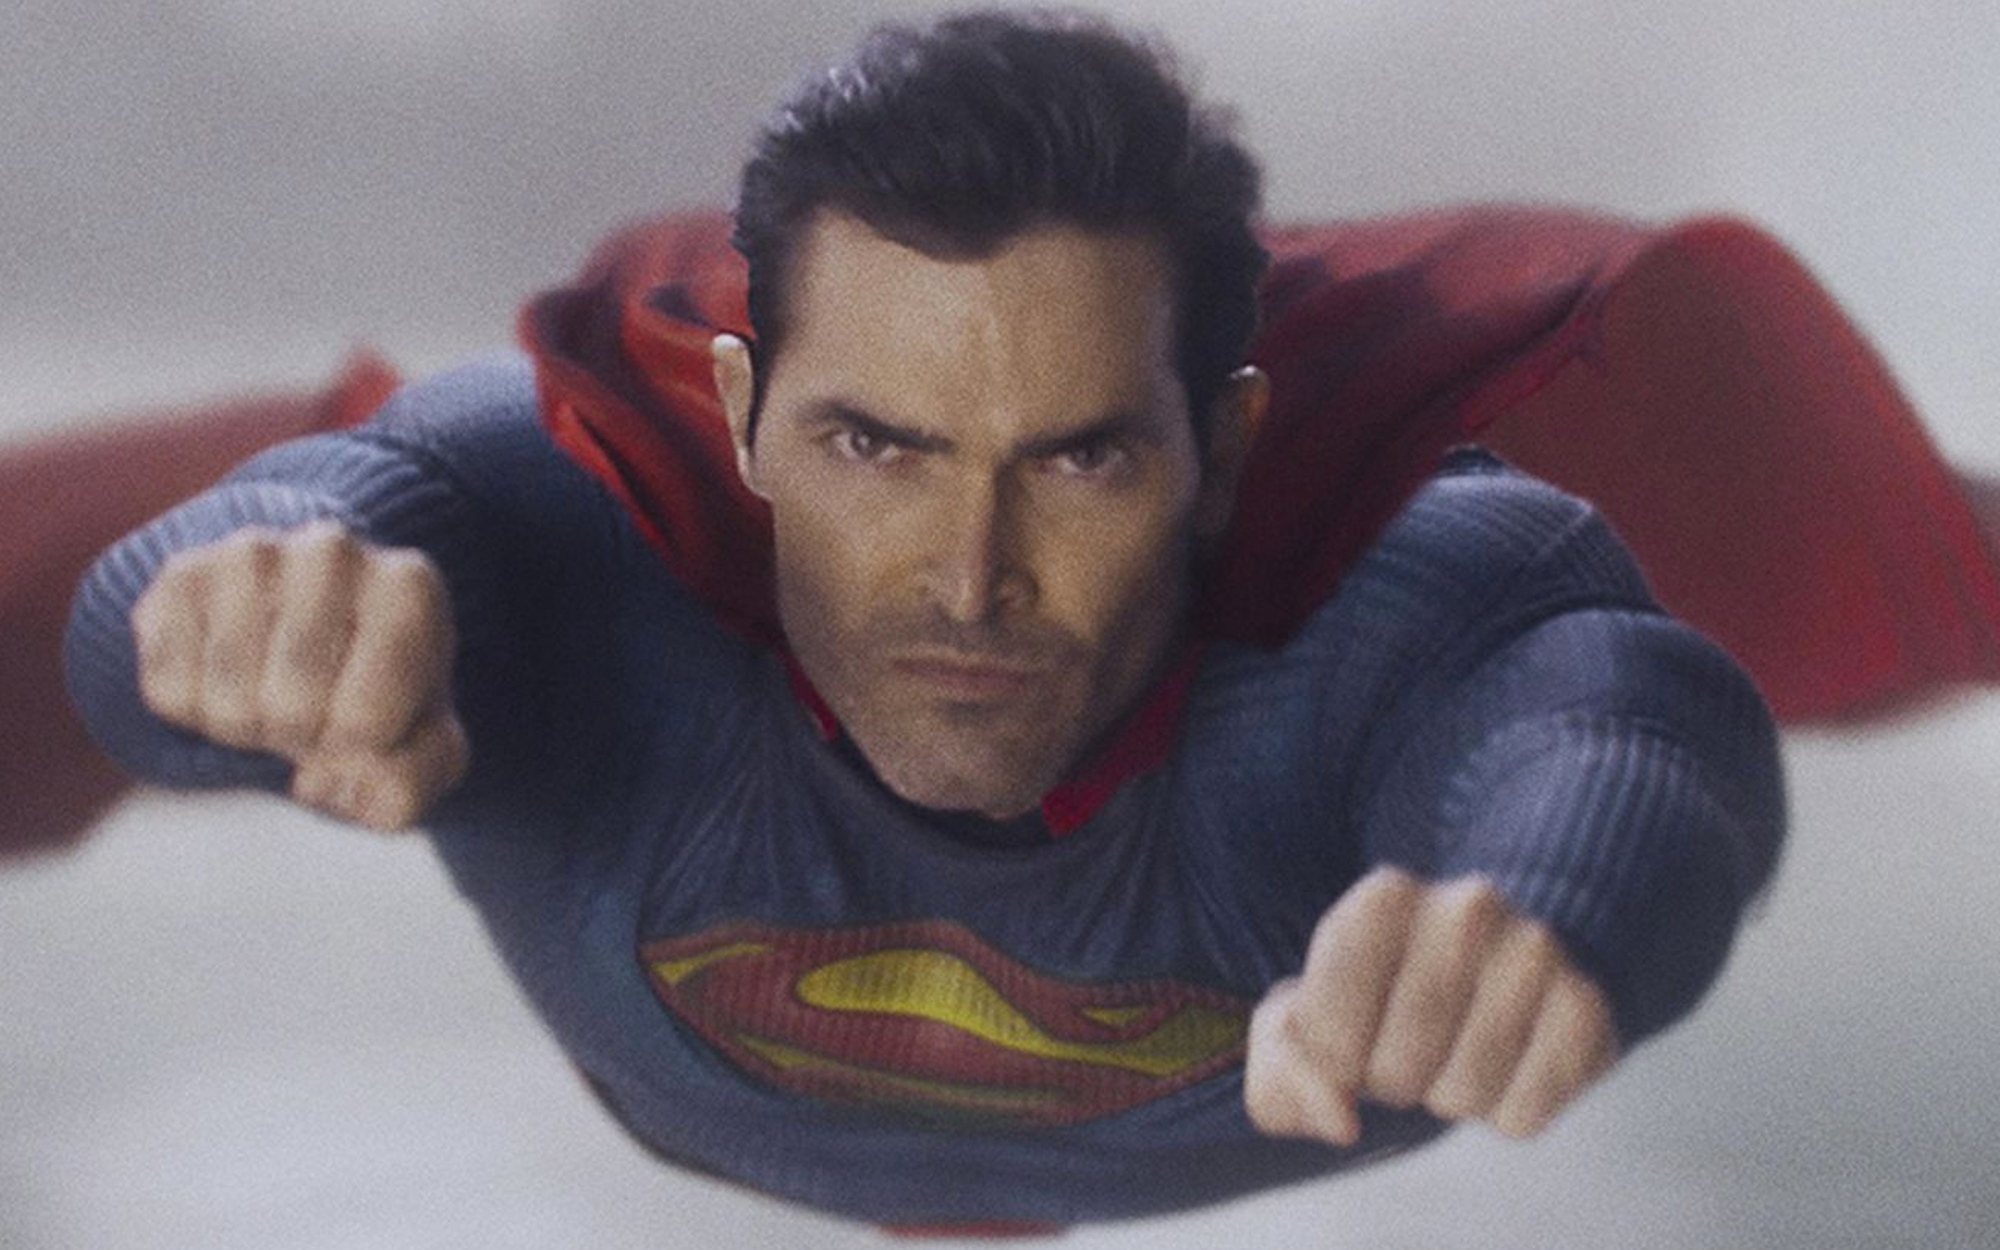 El estreno de 'Superman & Lois' eleva a The CW, que supera a Fox